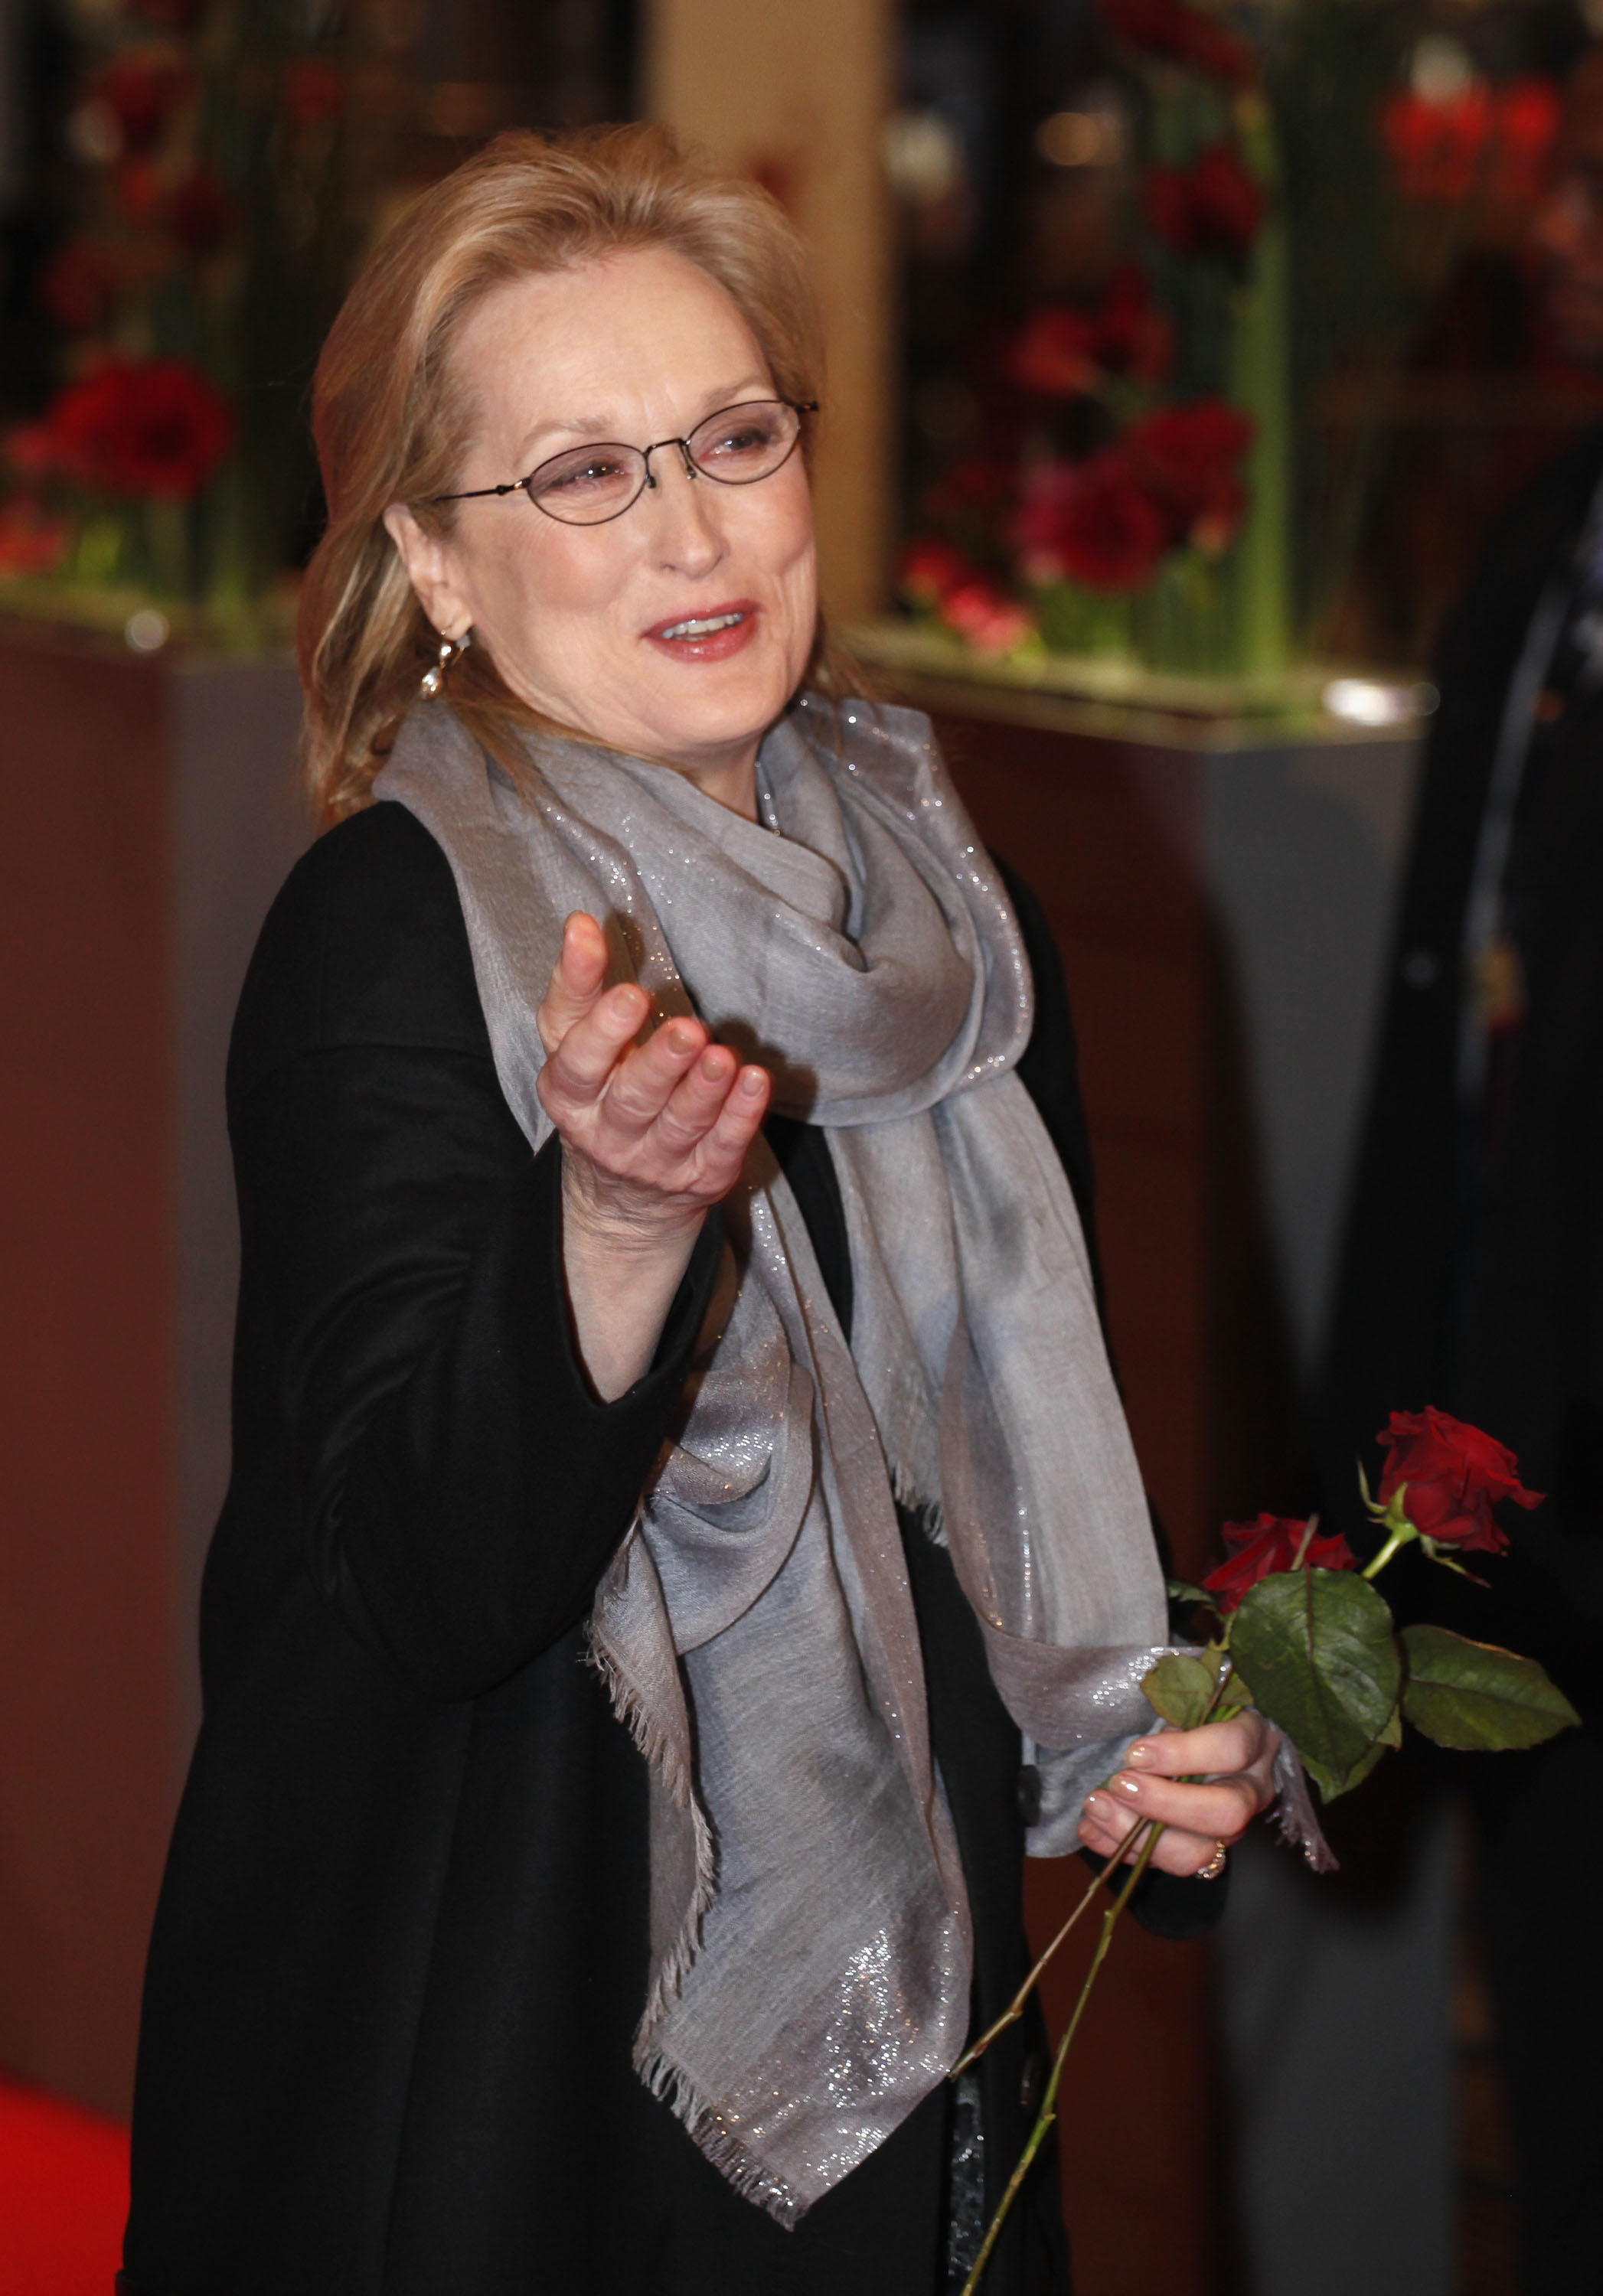 Meryl Streep à la première de "La dame de fer" lors de la sixième journée du 62e Festival international du film de Berlin au Berlinale Palast le 14 février 2012 à Berlin, Allemagne | Source : Getty Images